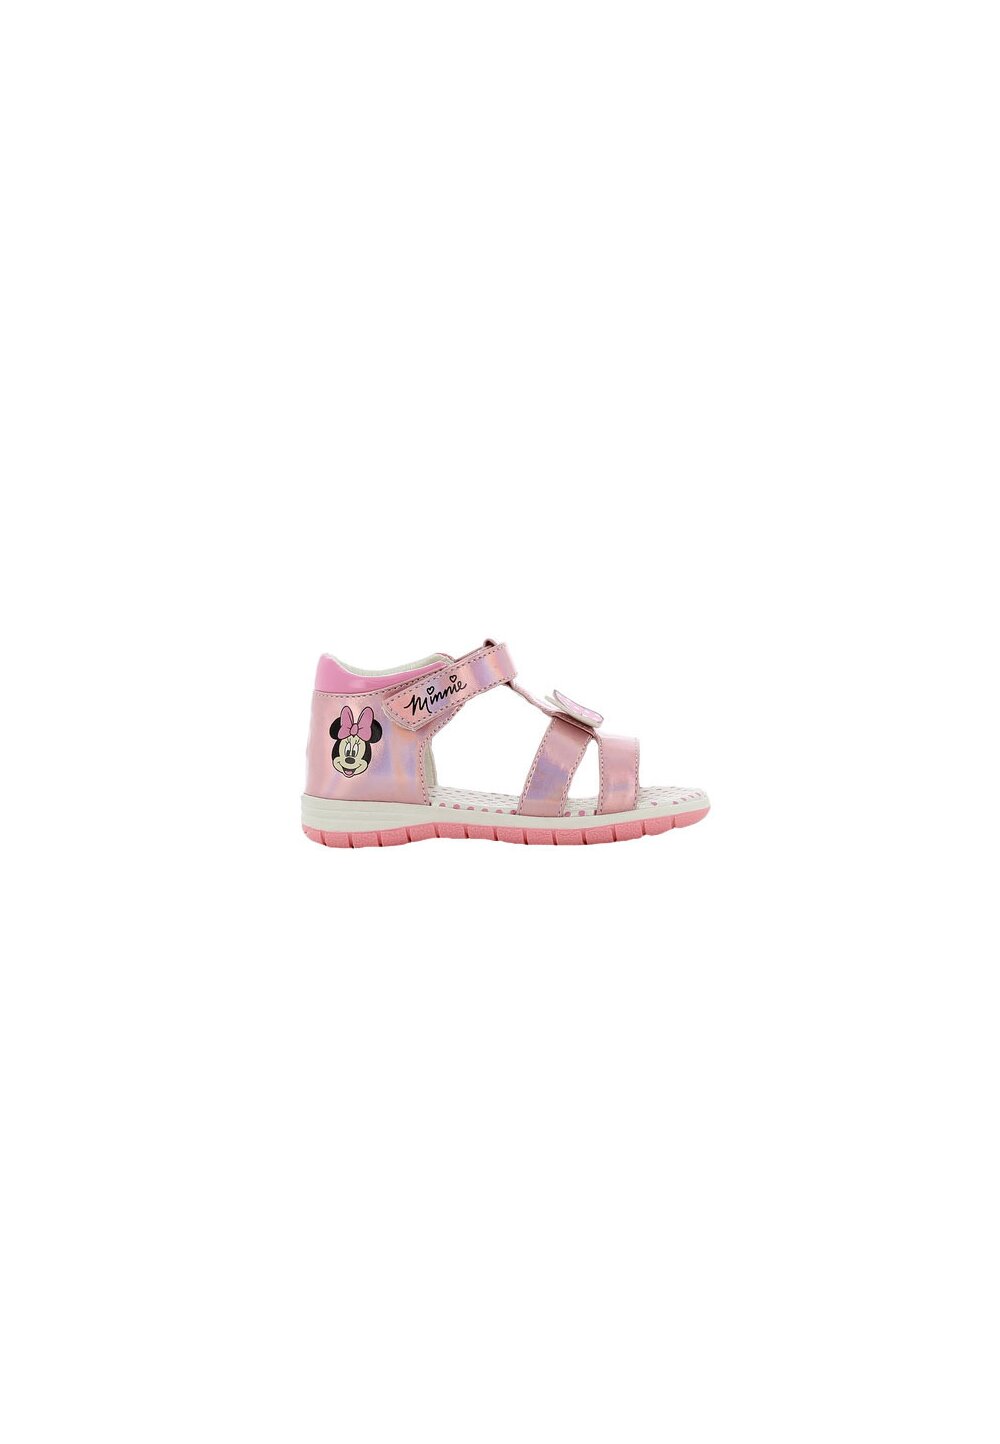 Sandale fete, cu scai din piele ecologica, Minnie, roz metalic DISNEY